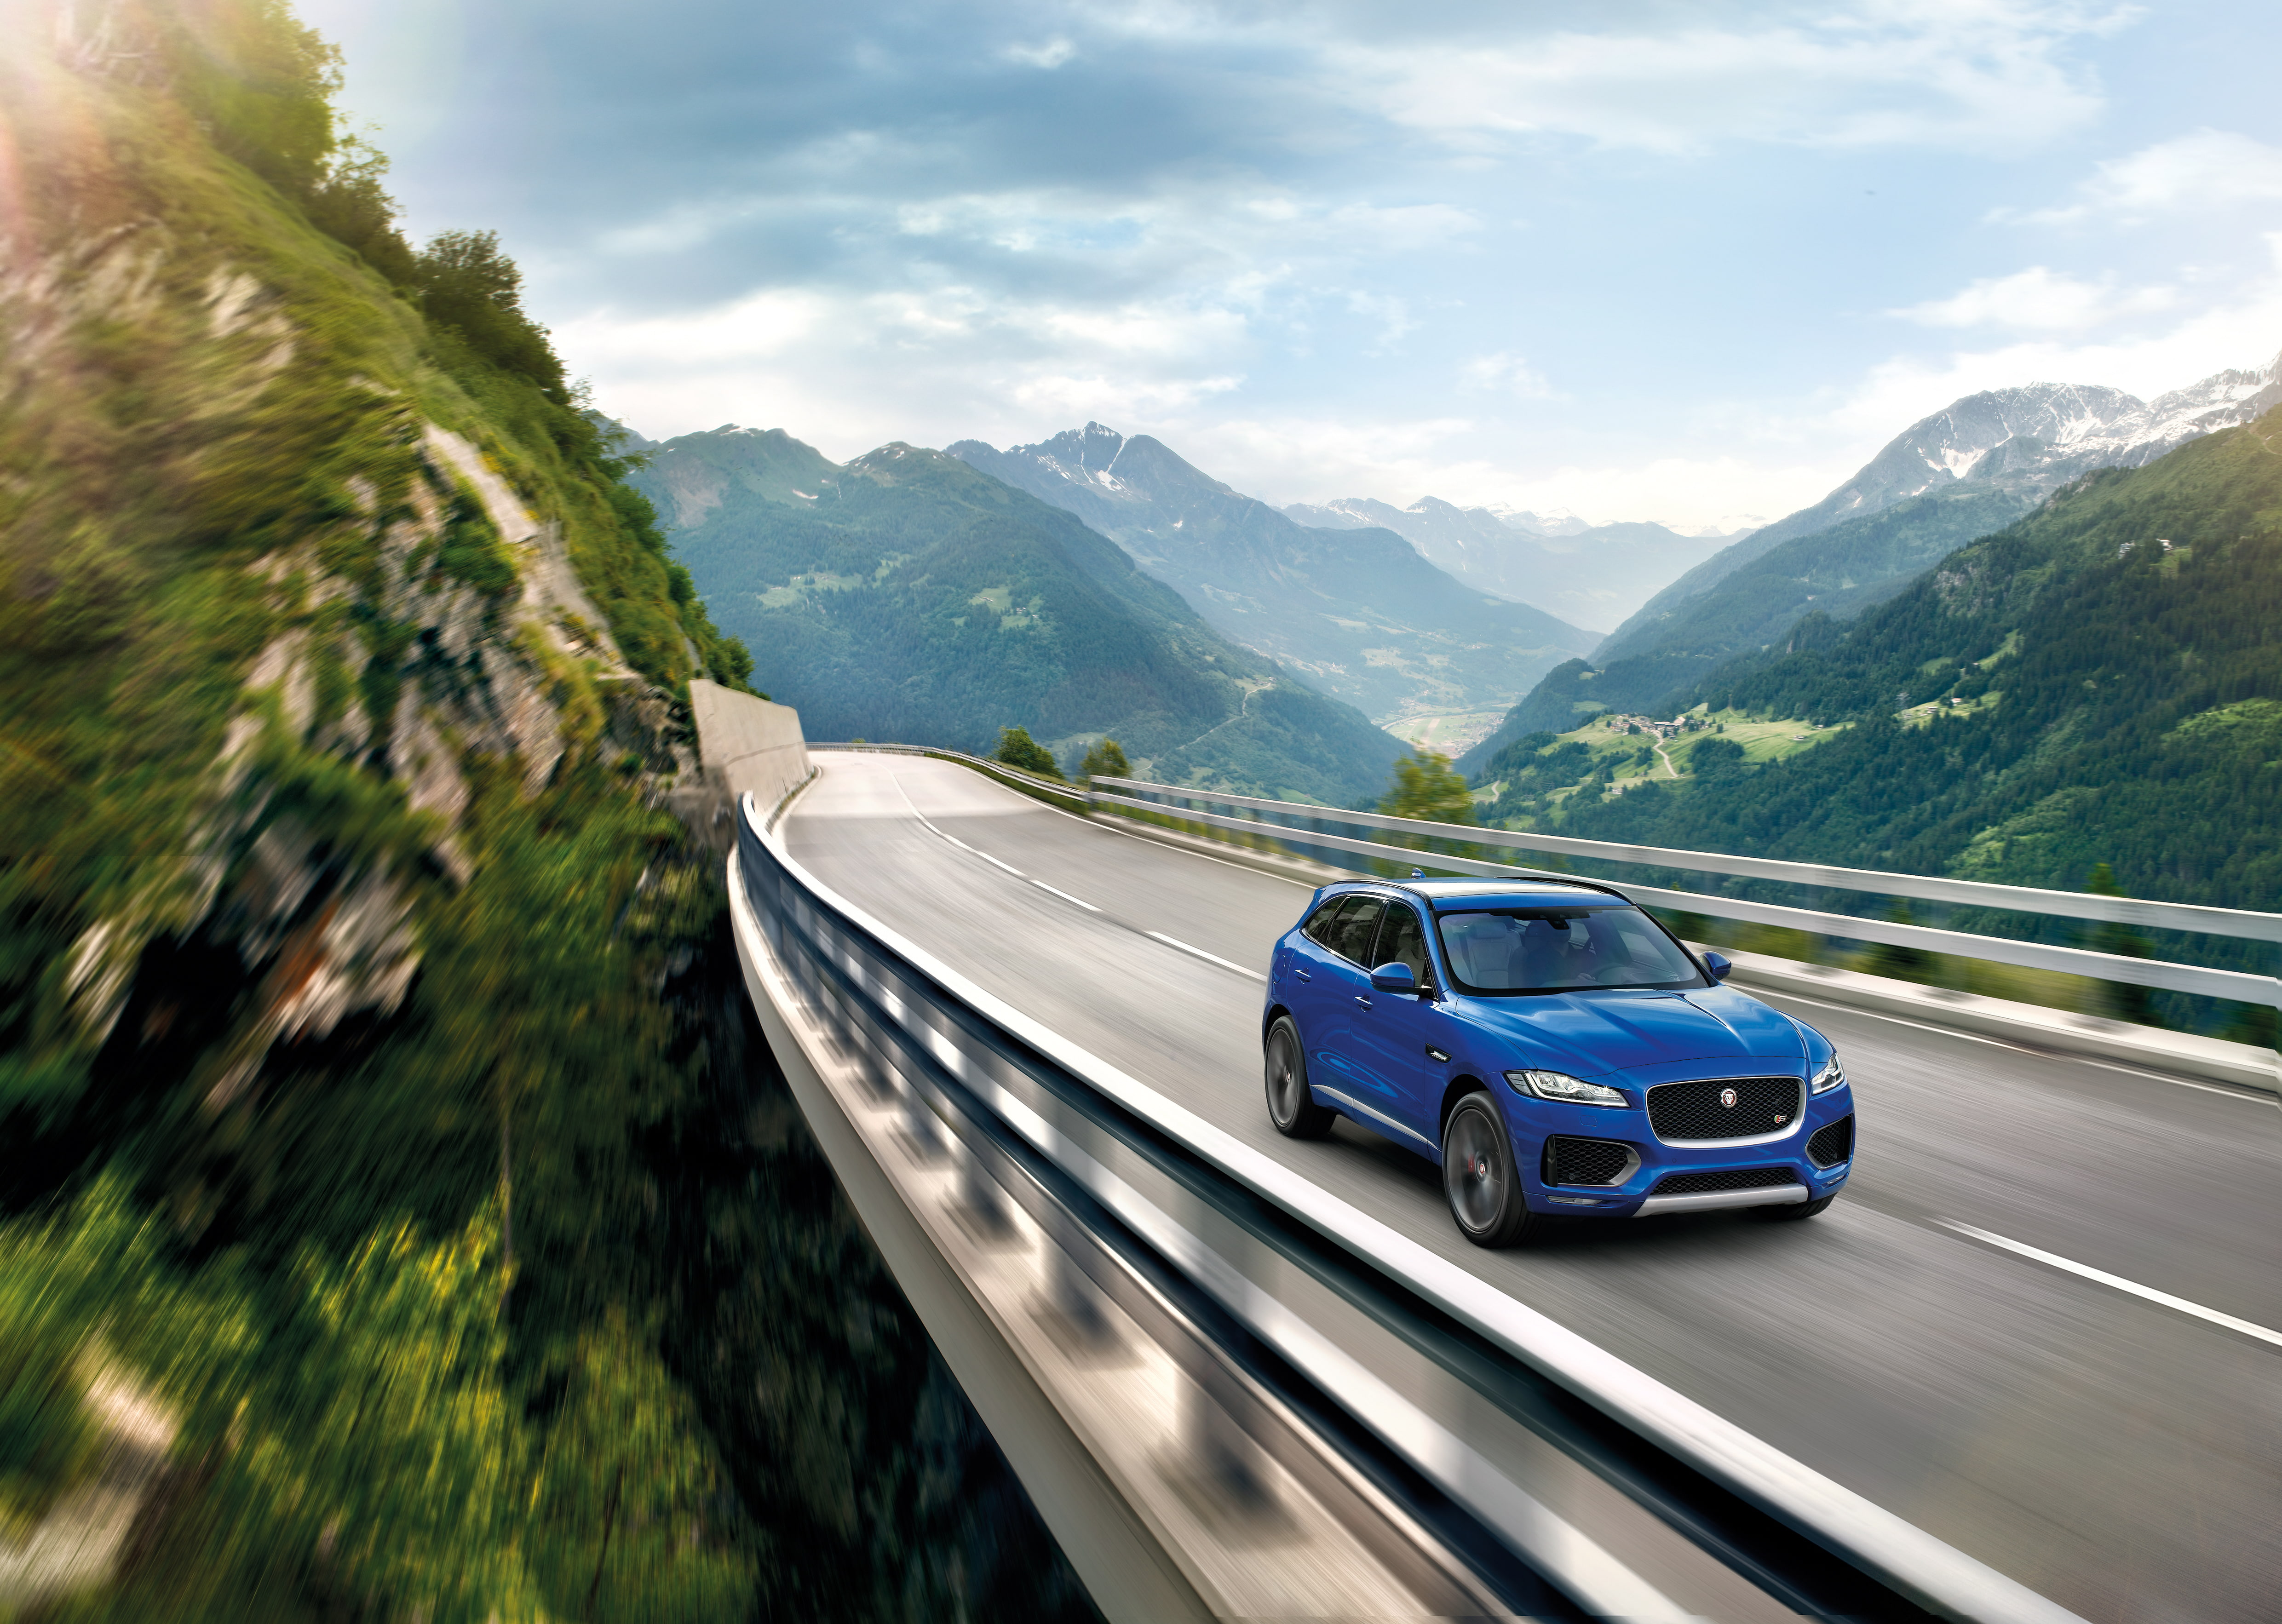 Jaguar F-pace, Crossover, Movement, Mountains, Bridge - Jaguar On Road , HD Wallpaper & Backgrounds